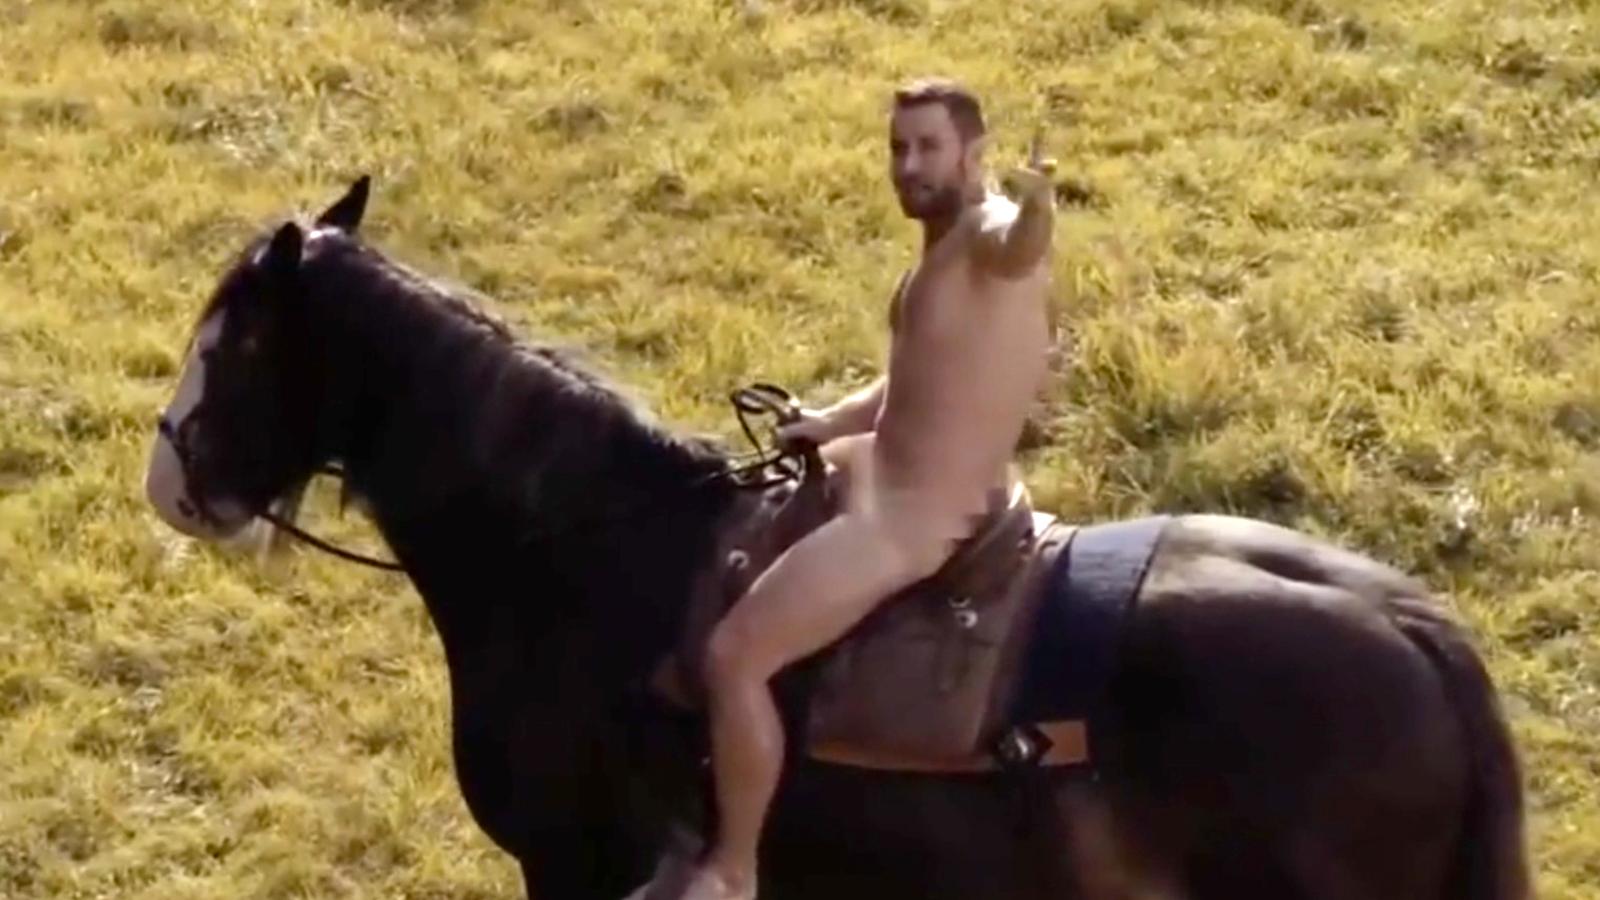 Måns naken till häst i reklamfilm.